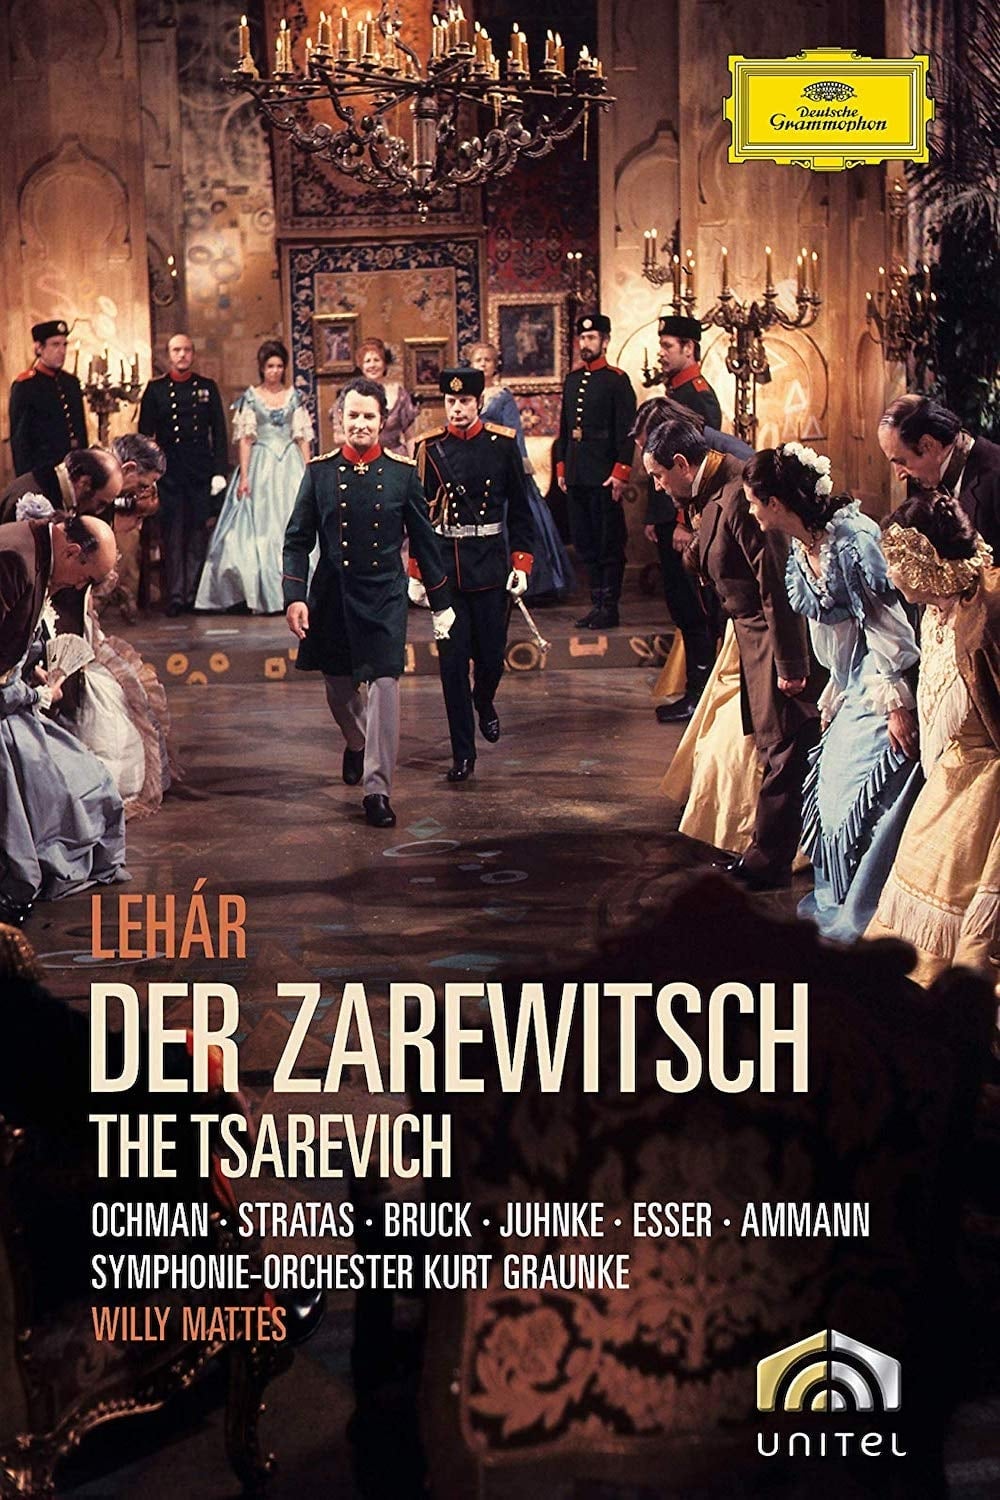 Der Zarewitsch (1973)